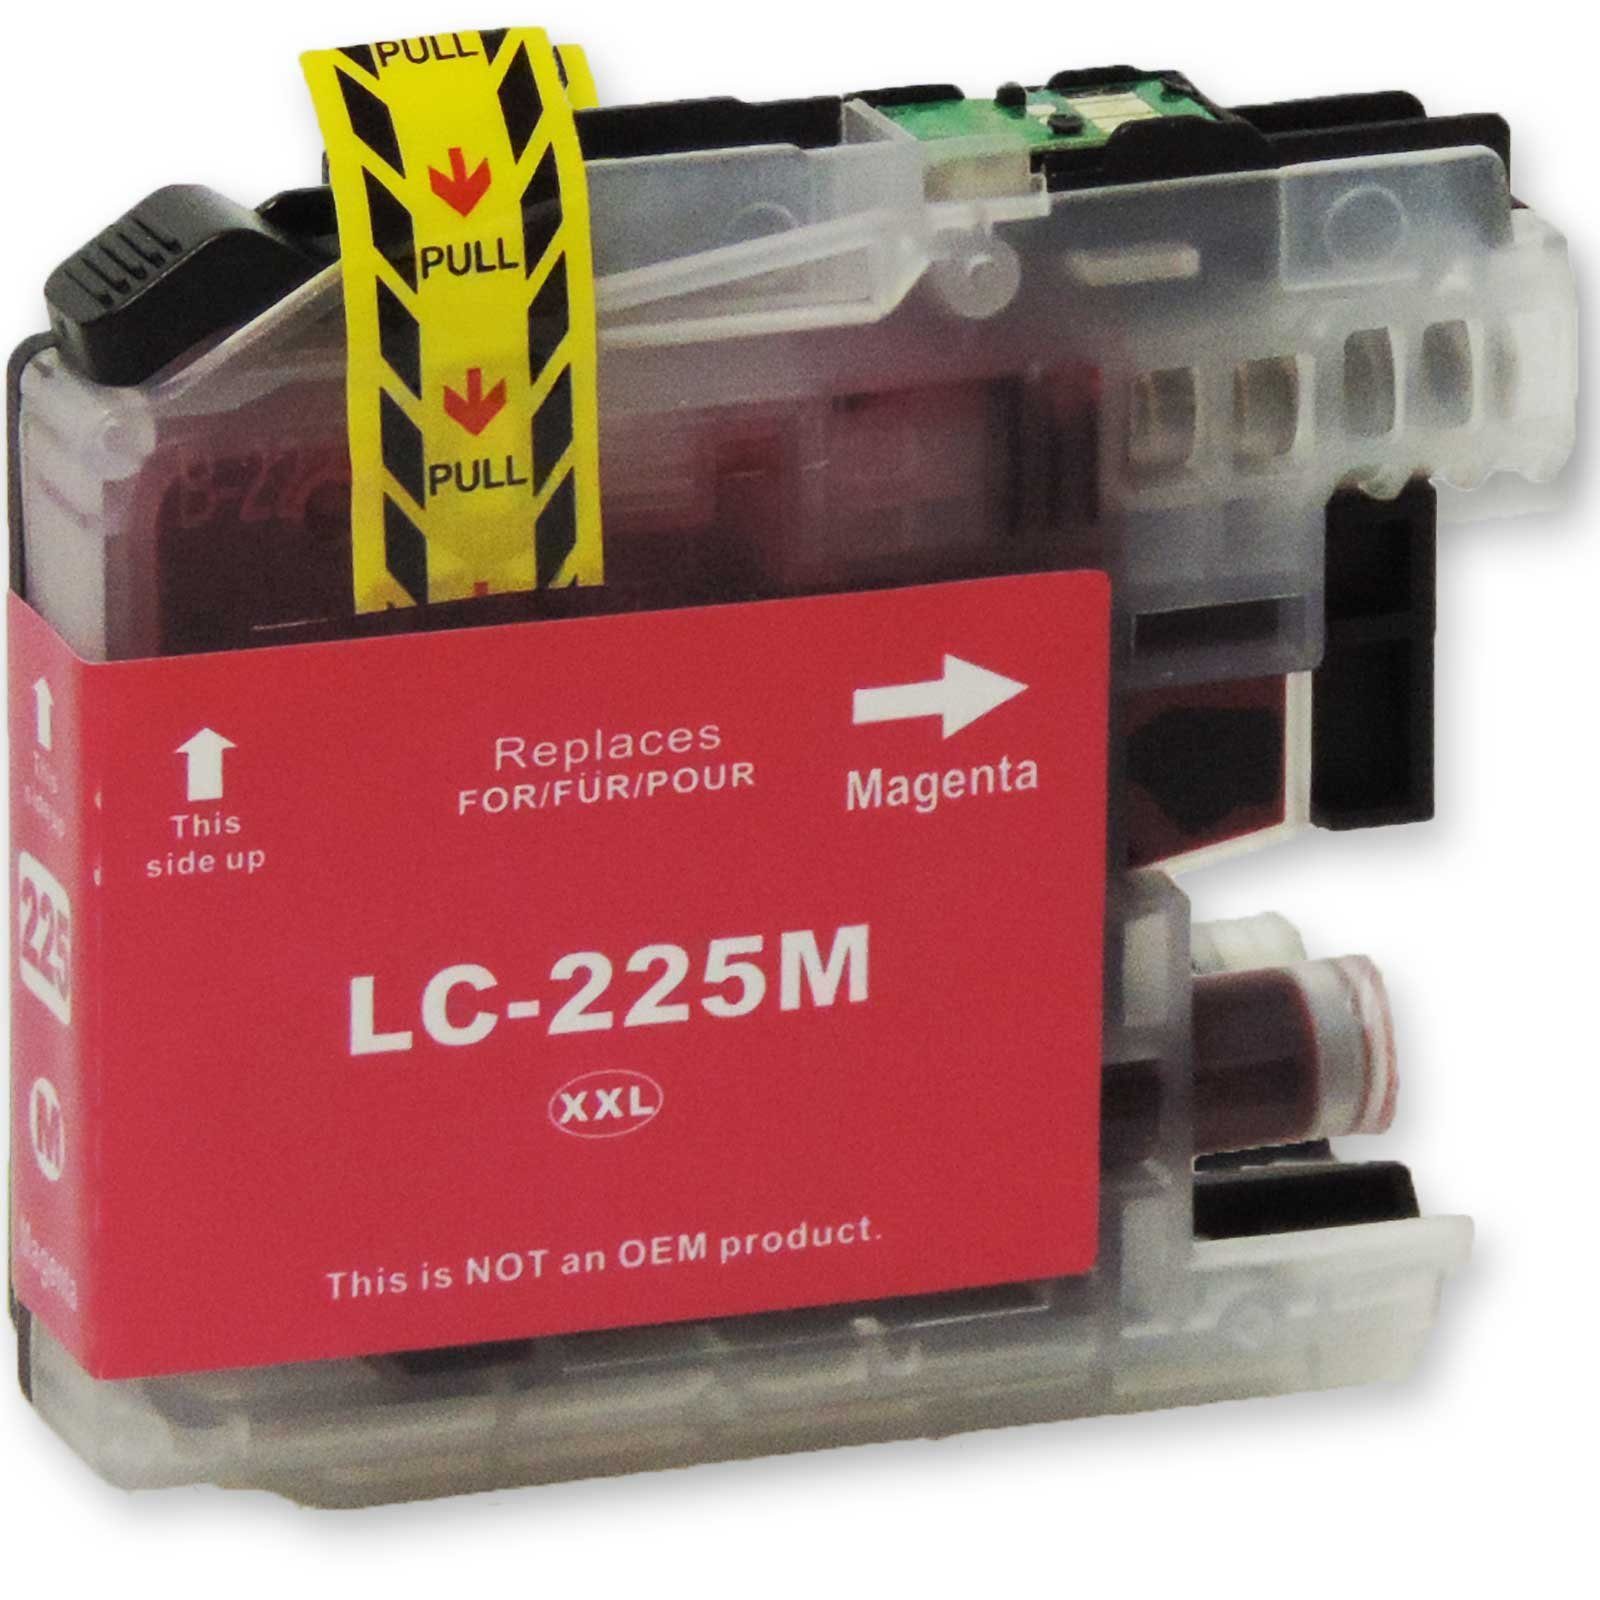 Echt D&C Kompatibel Tintenpatrone Magenta XXL Brother LC-225